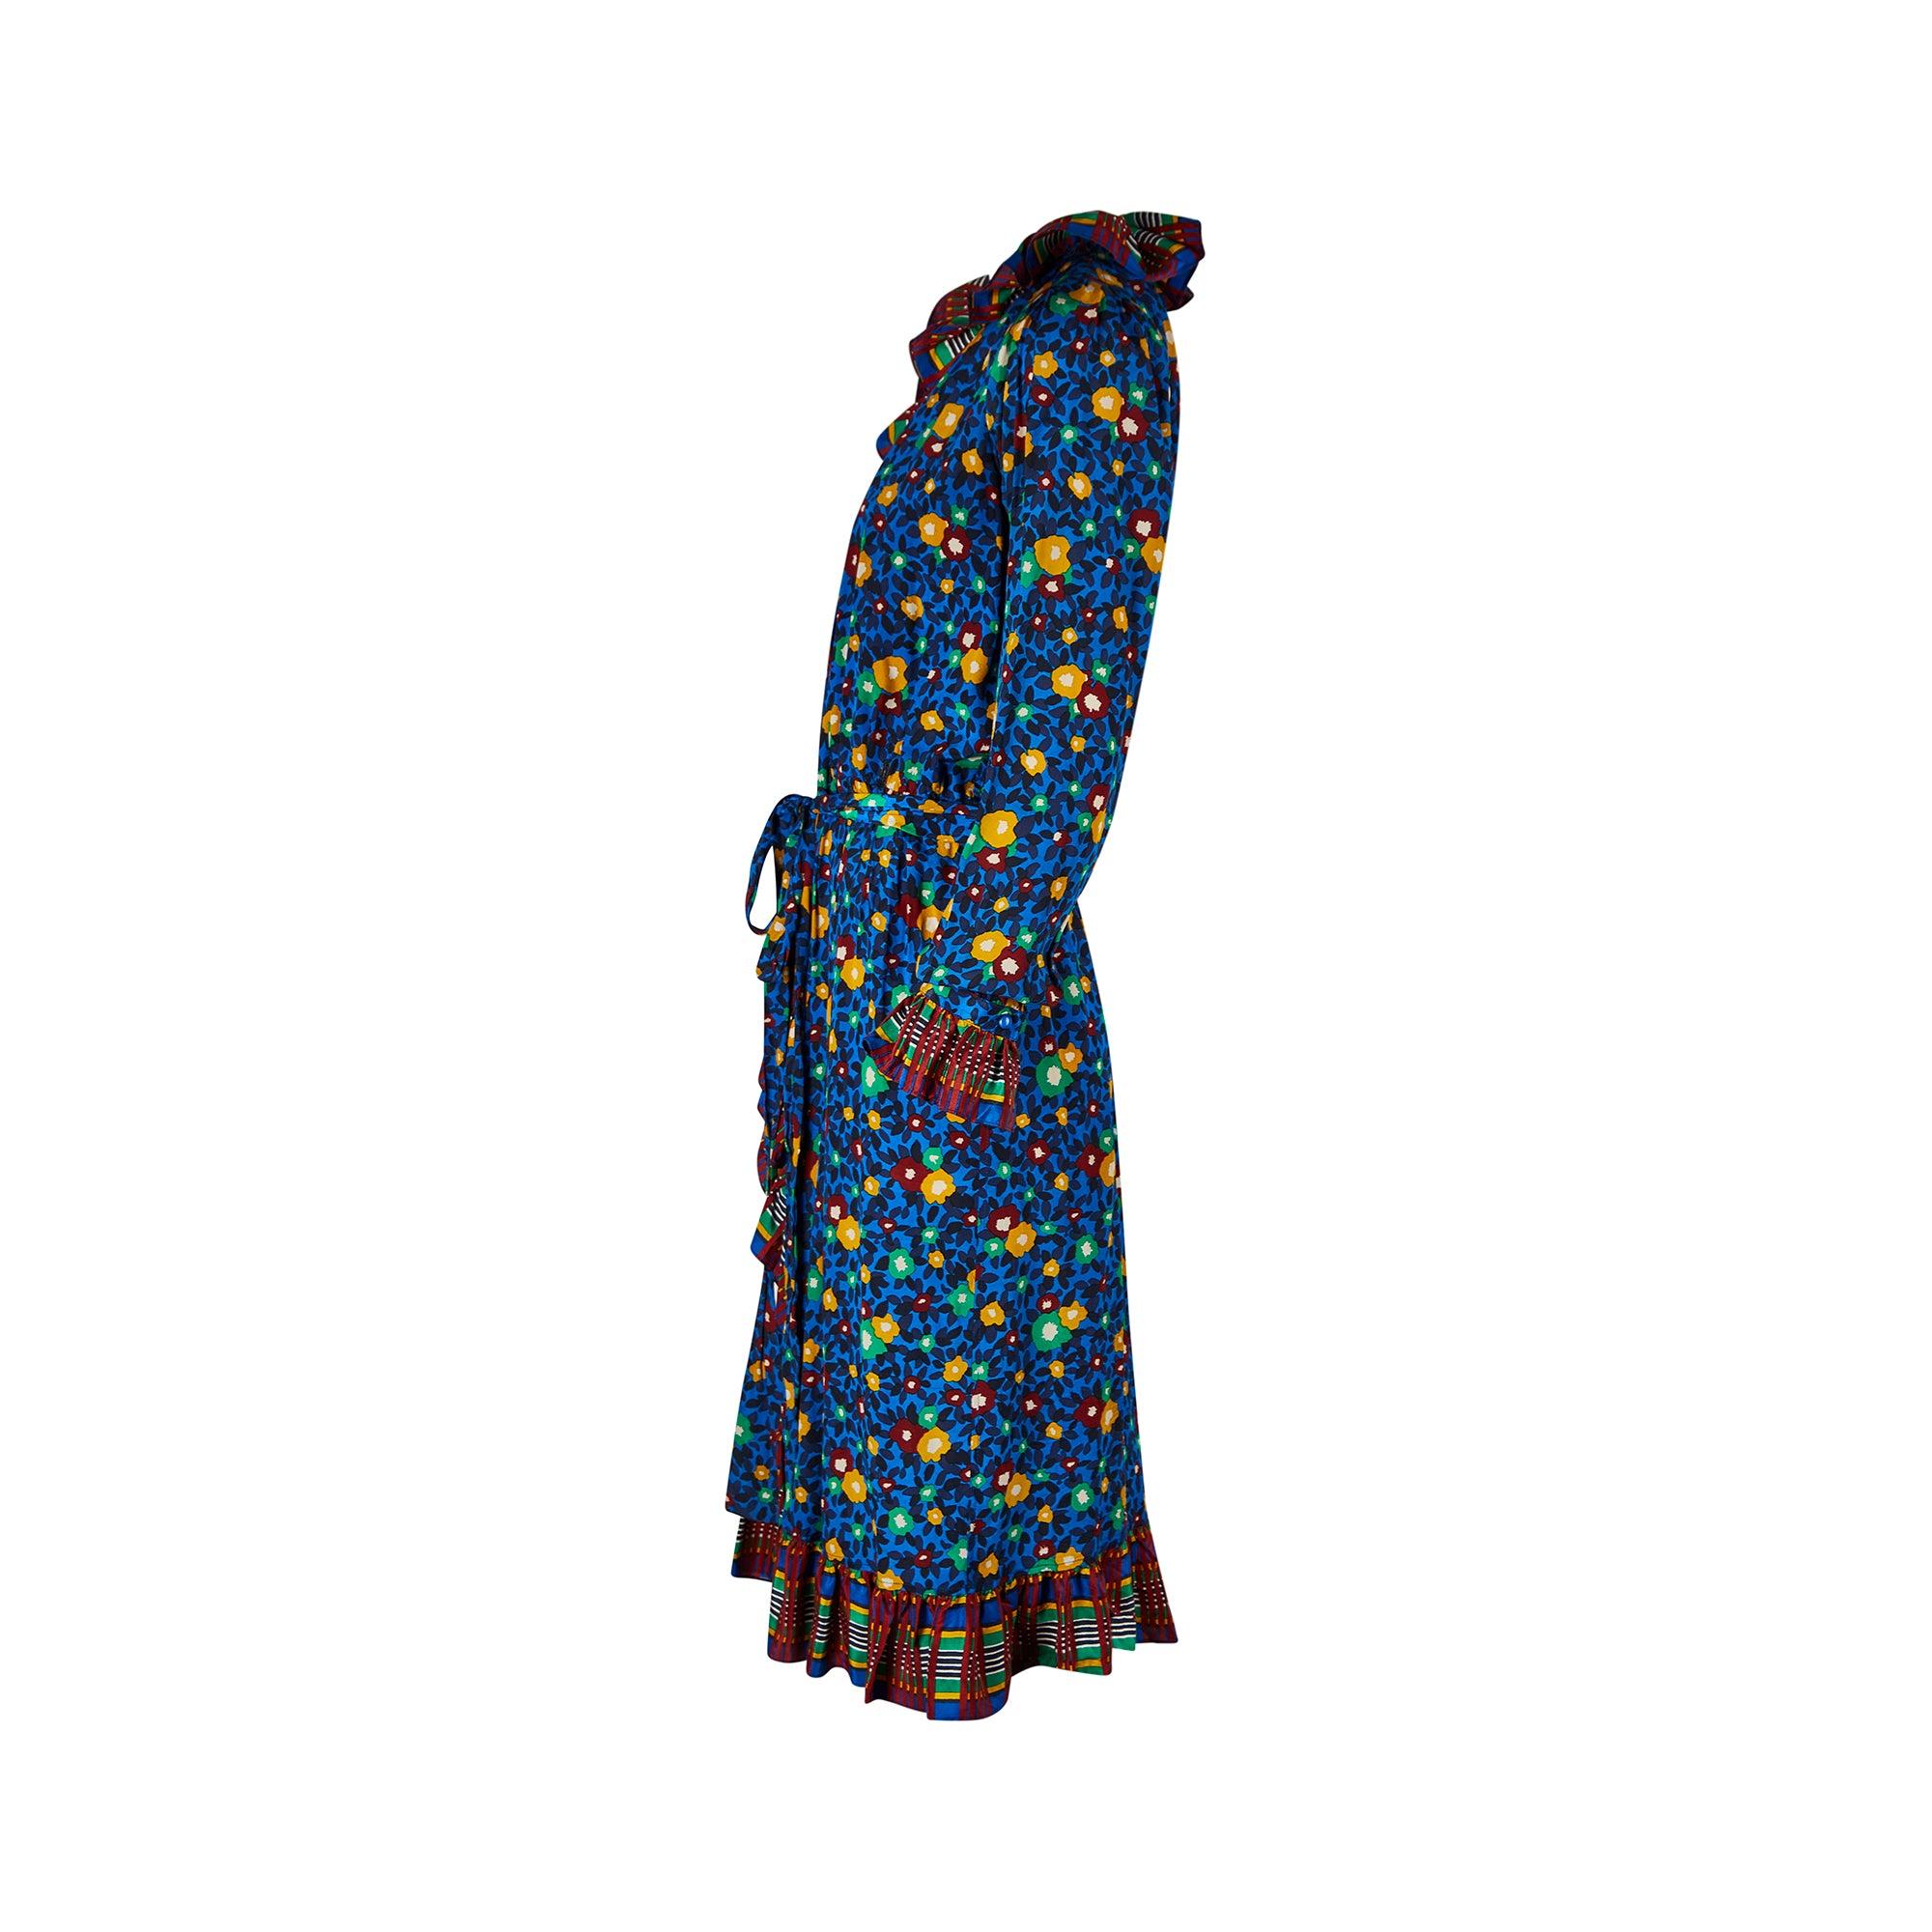 Cette robe portefeuille en soie documentée est issue de la collection prêt-à-porter printemps/été 1980 d'Yves Saint Laurent. L'imprimé floral est contrasté par un carrelage au niveau du col, des poignets et de l'ourlet, qui sont tous décademment